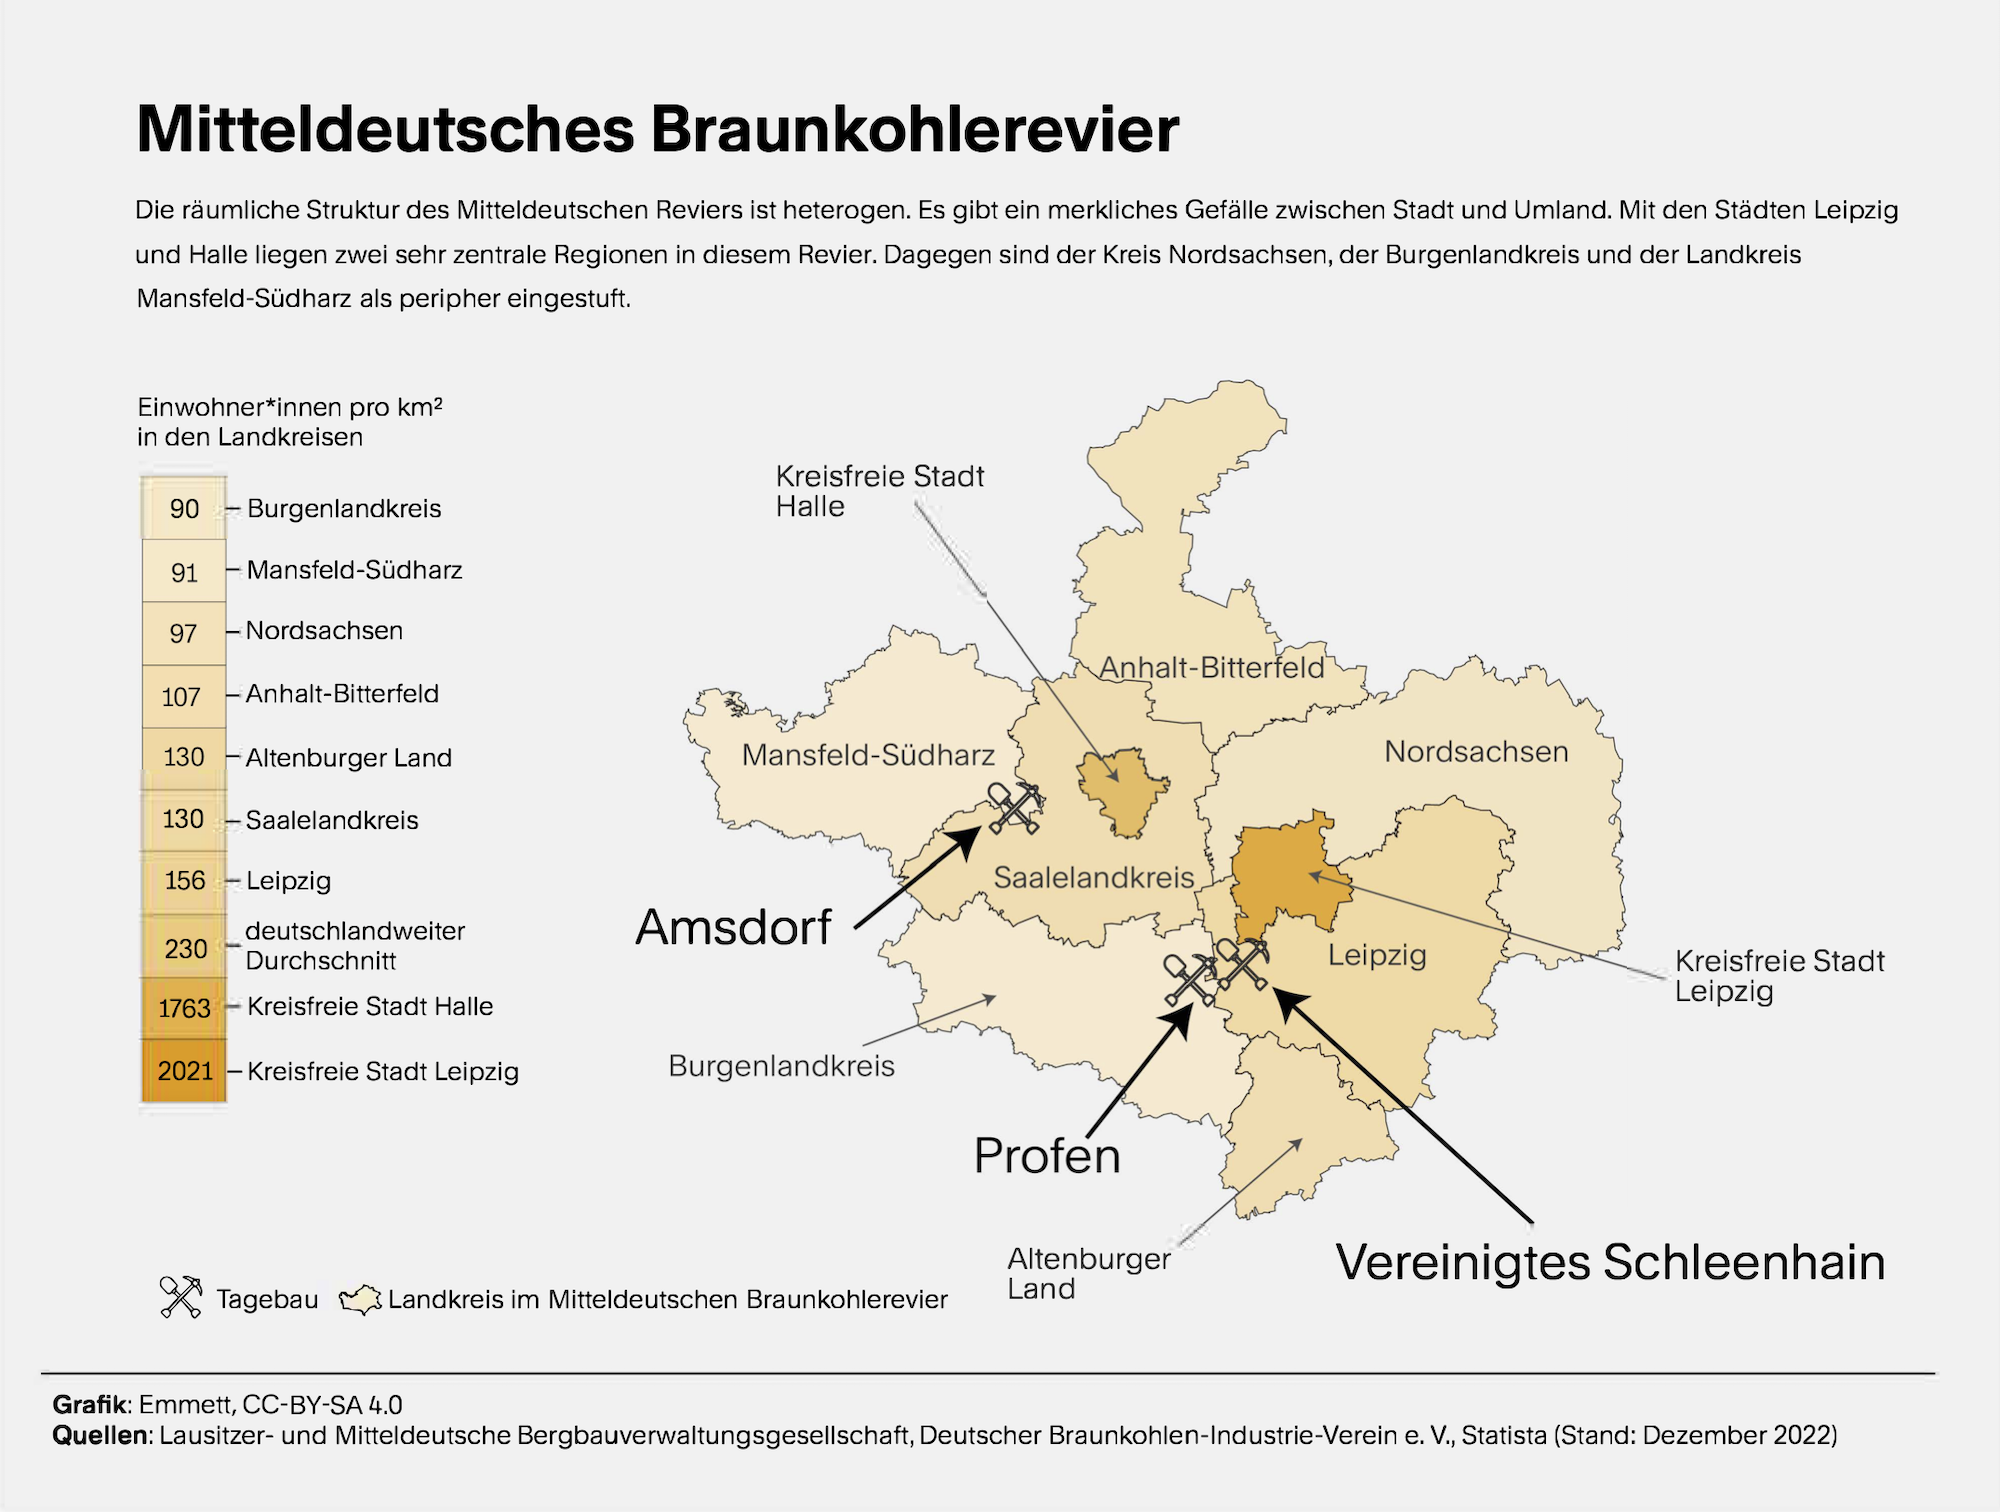 Grafik. Eine Karte zeigt das Mitteldeutsche Braunkohlerevier, aufgeteilt in mehrere Regionen, die farbig unterschiedlich ausgemalt sind, entsprechend der Zahl der Einwohnerinnen pro Quadratkilometer